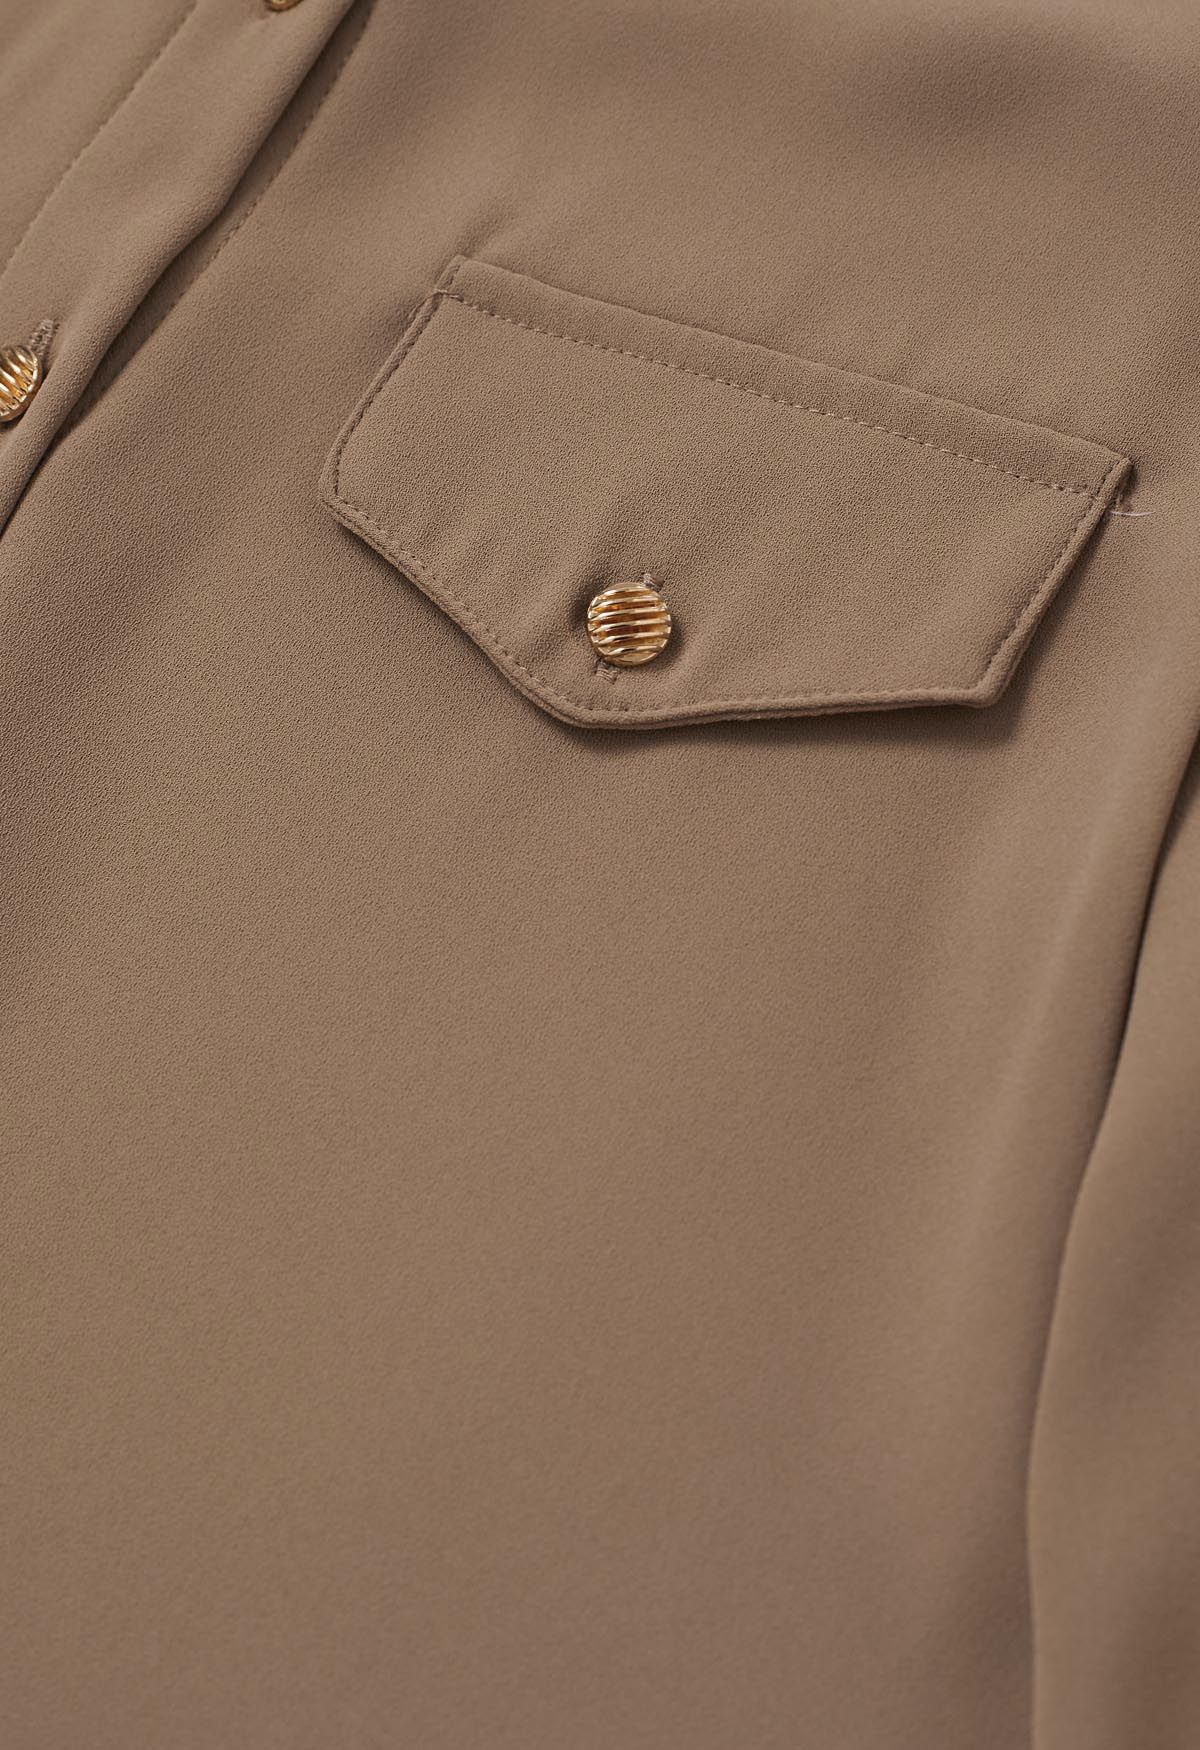 Camisa de gasa con detalles de botones de estilo moderno en color canela